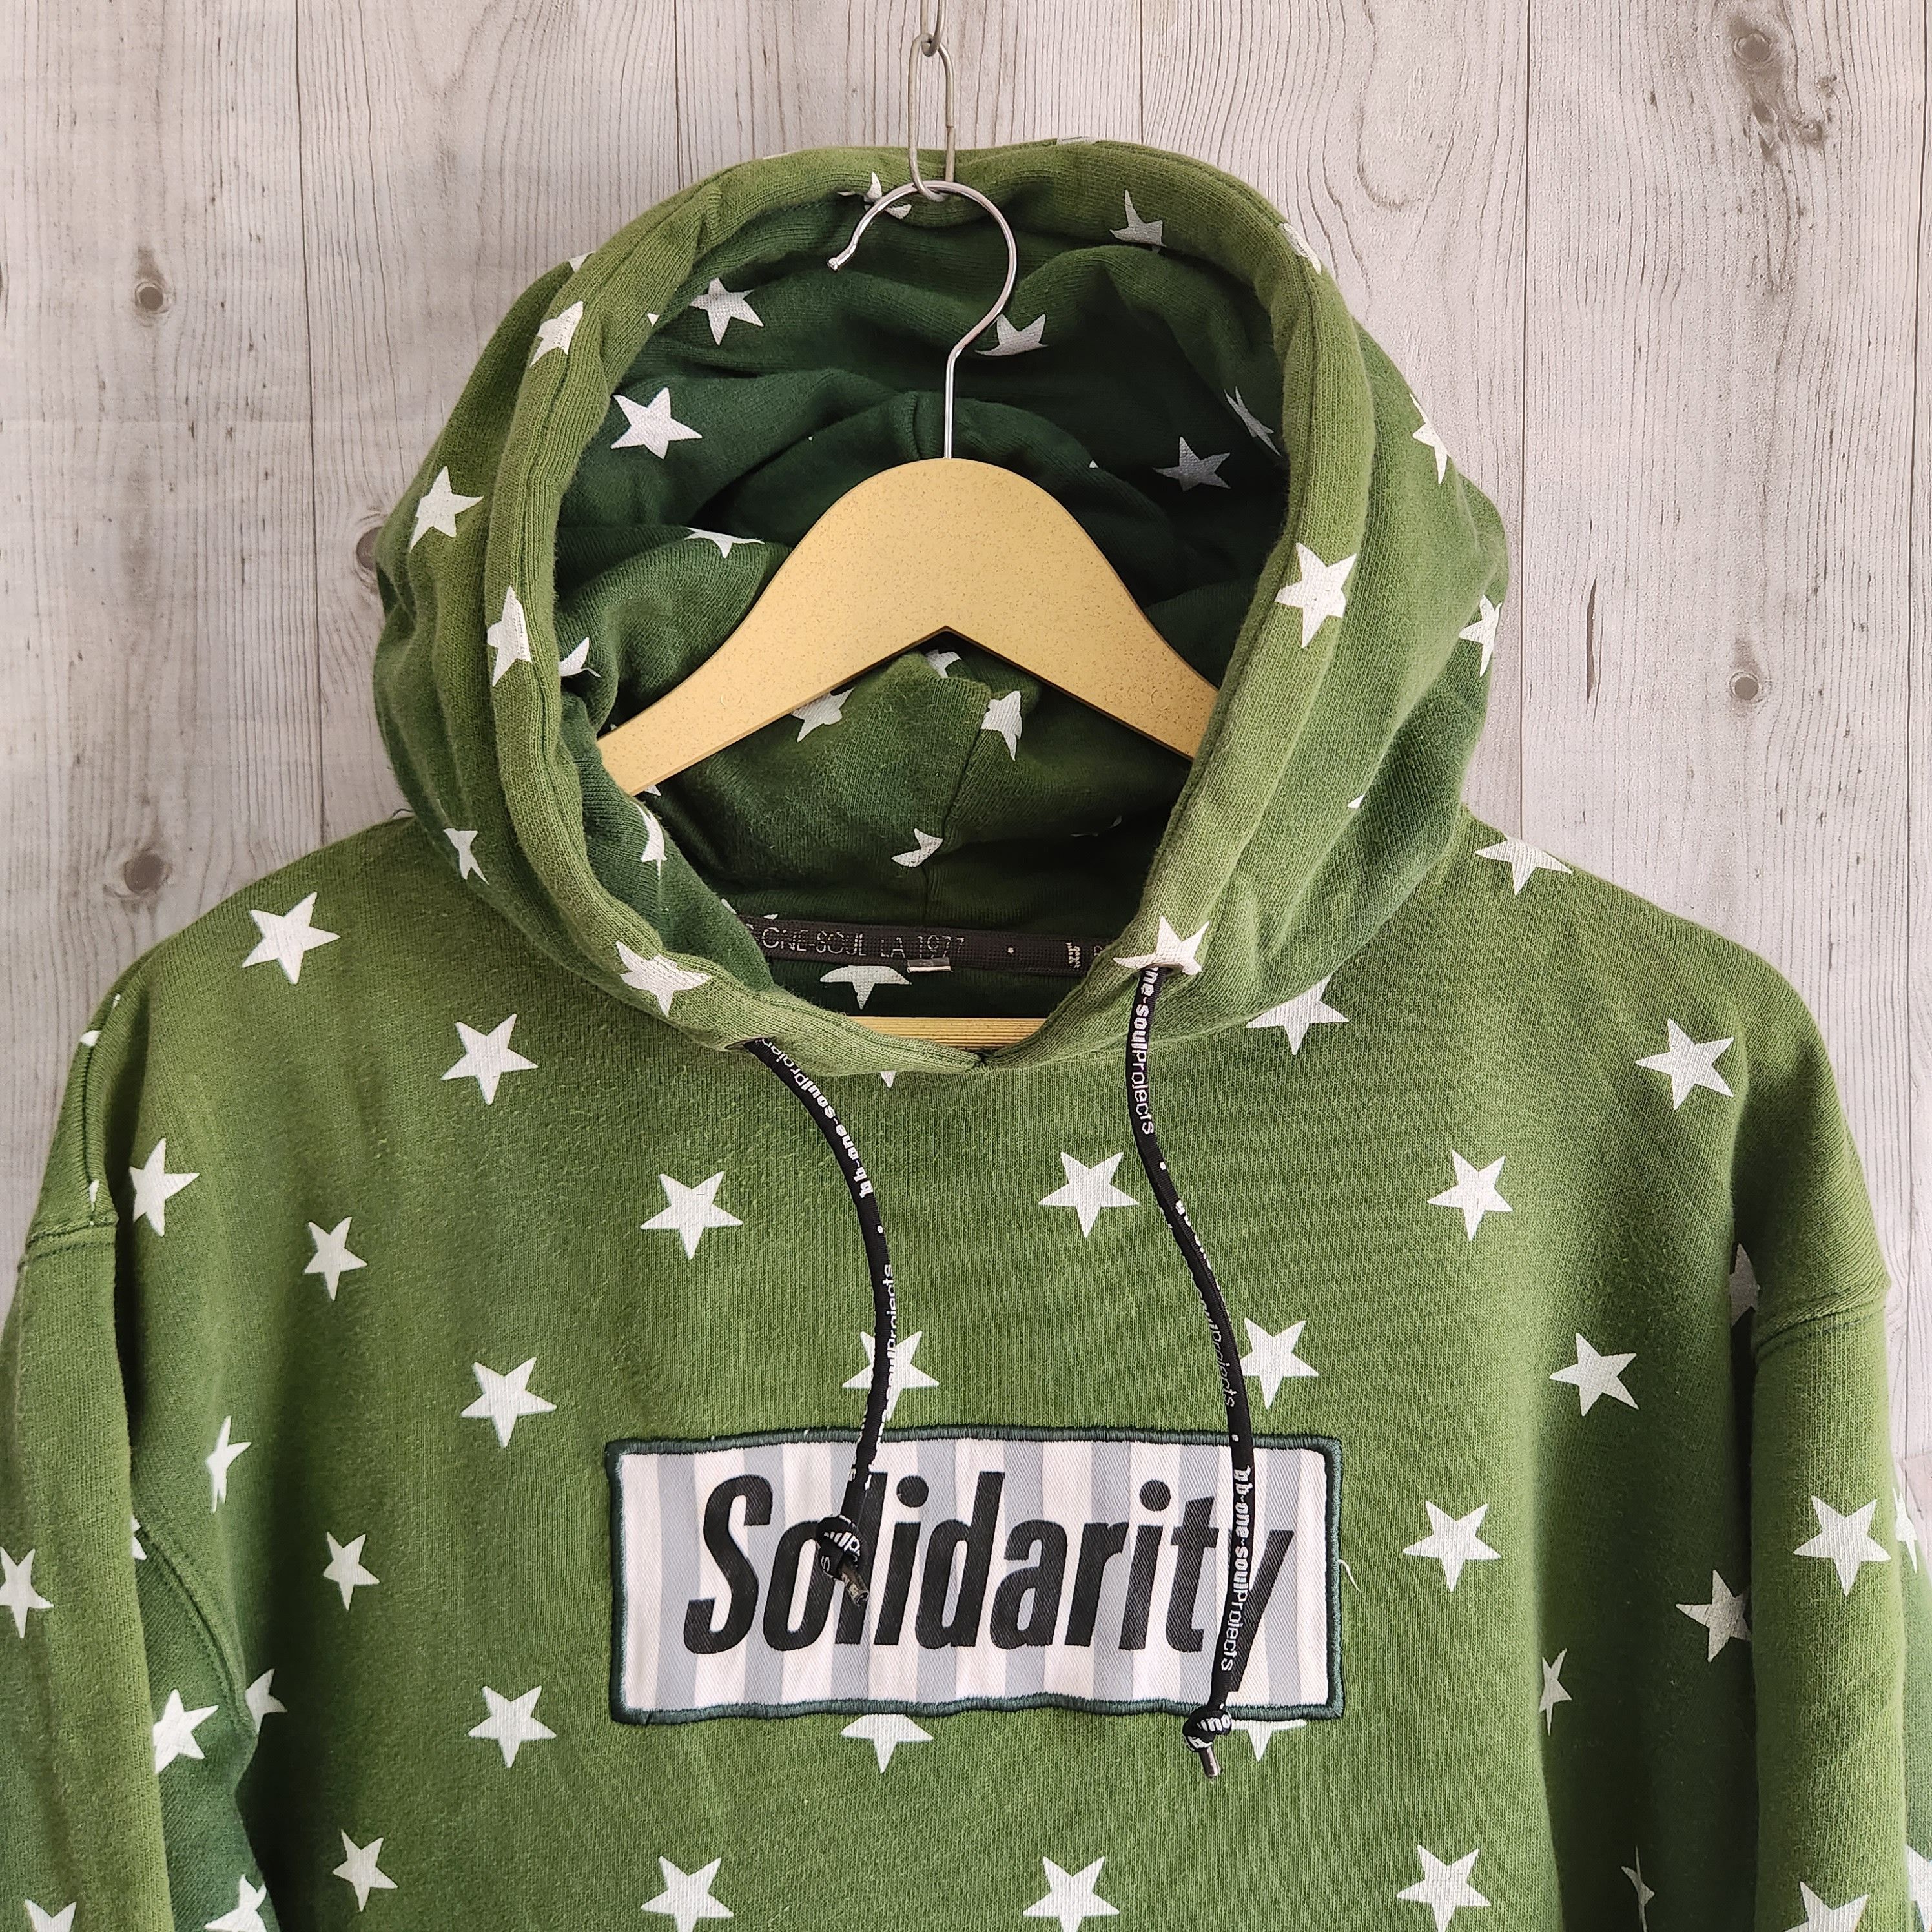 Streetwear - B One Soul Solidarity Full Printed Stars Skategang Hoodie - 15